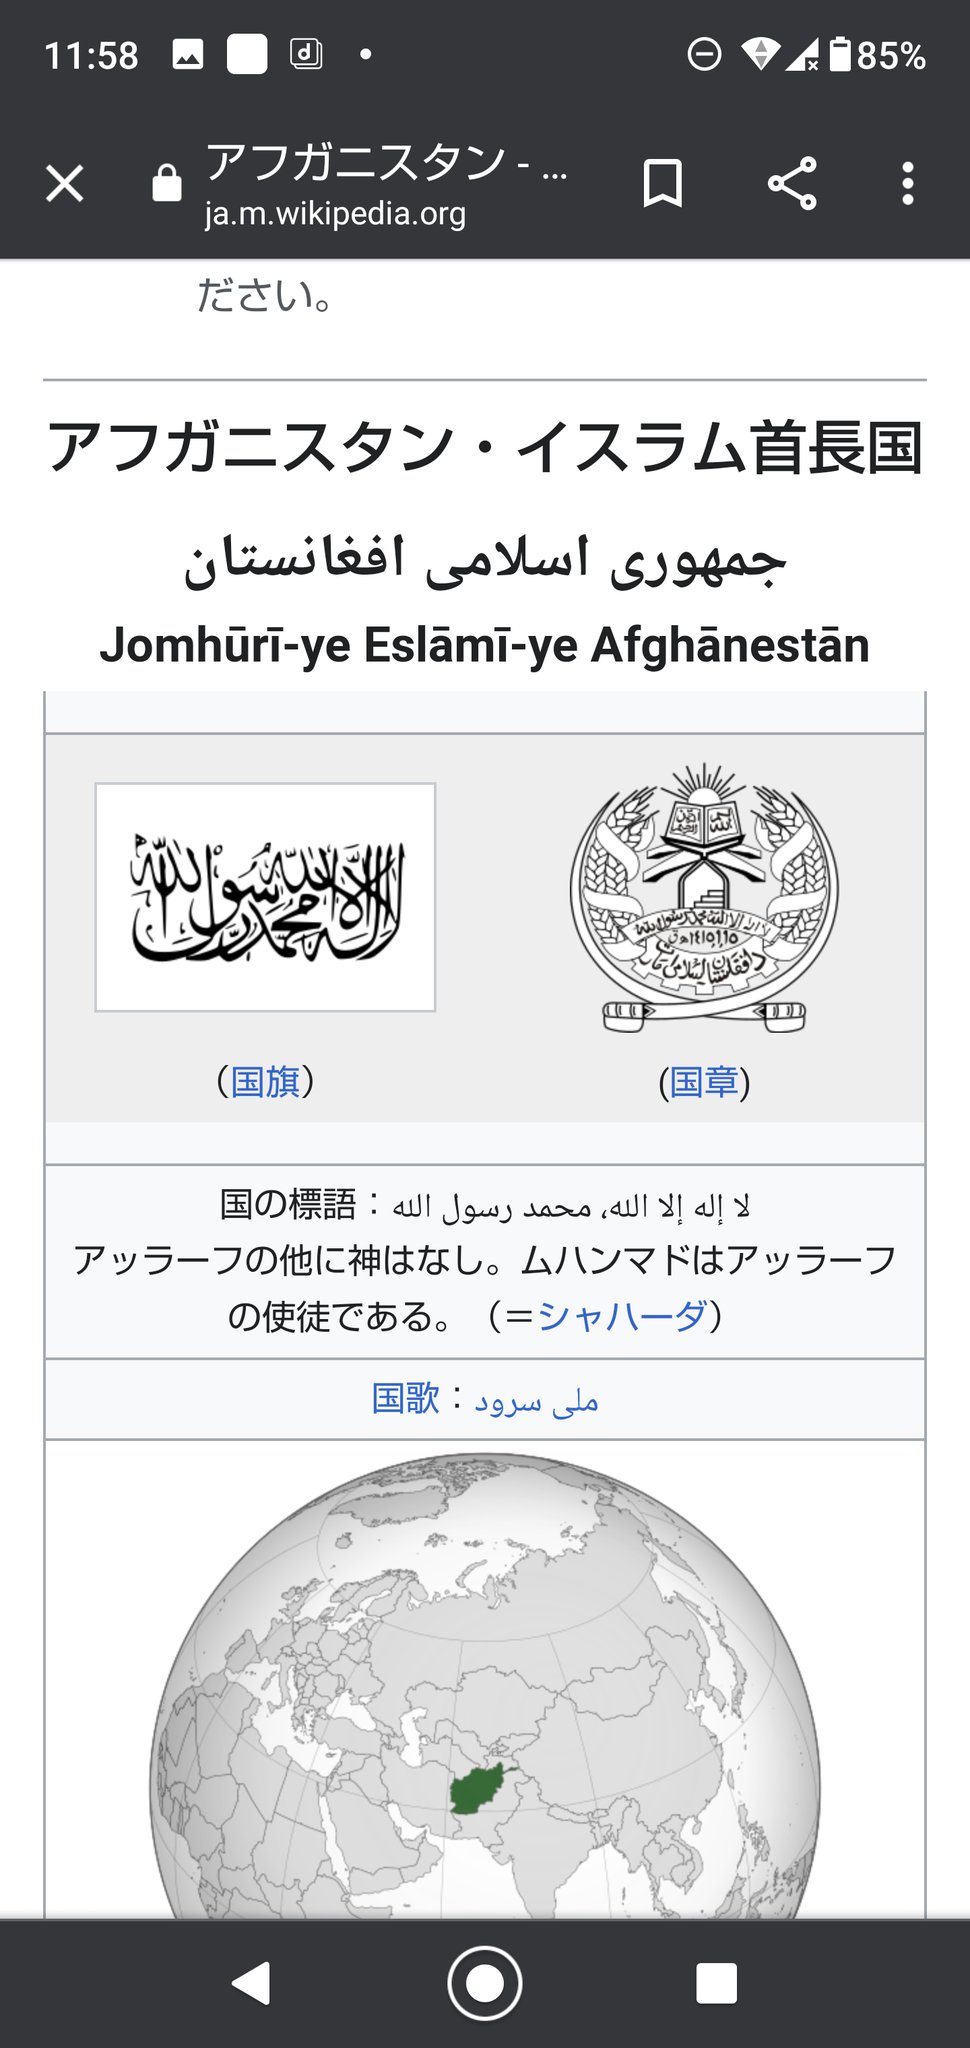 レドア アフガニスタンのwikiの国旗 とうとうタリバンの旗に変わったようで T Co Mc6tvye9lq Twitter